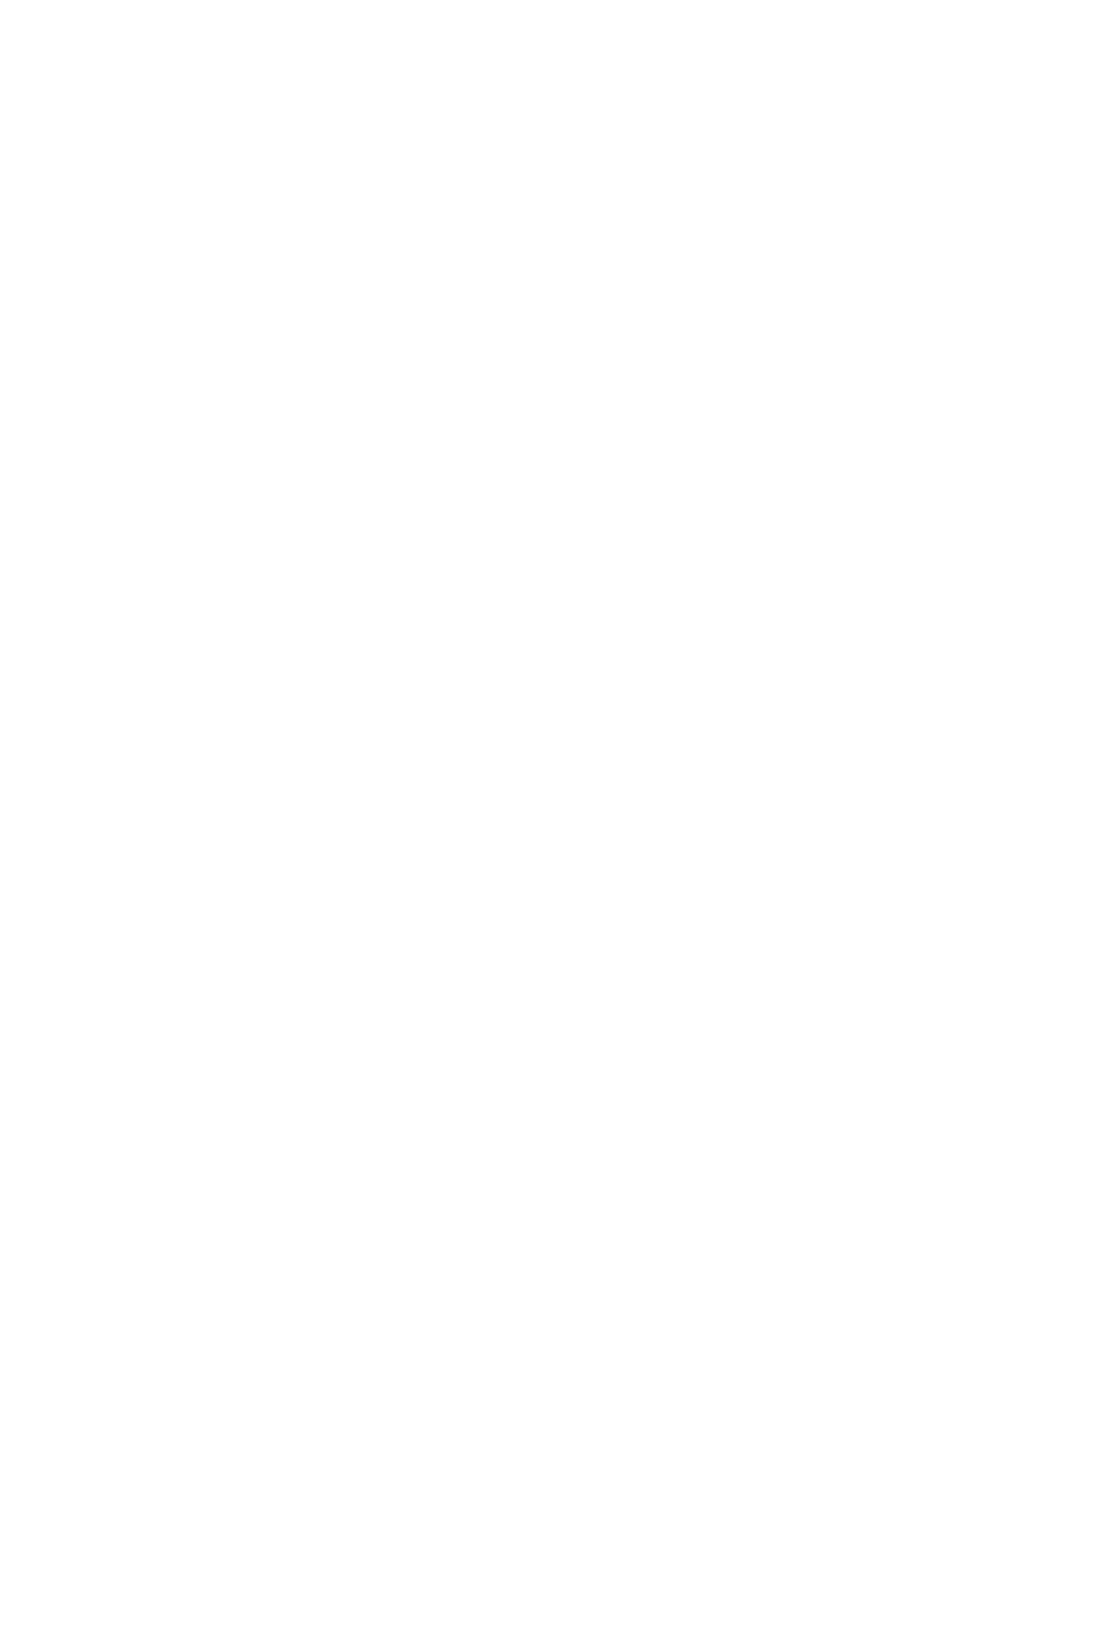 tg3d